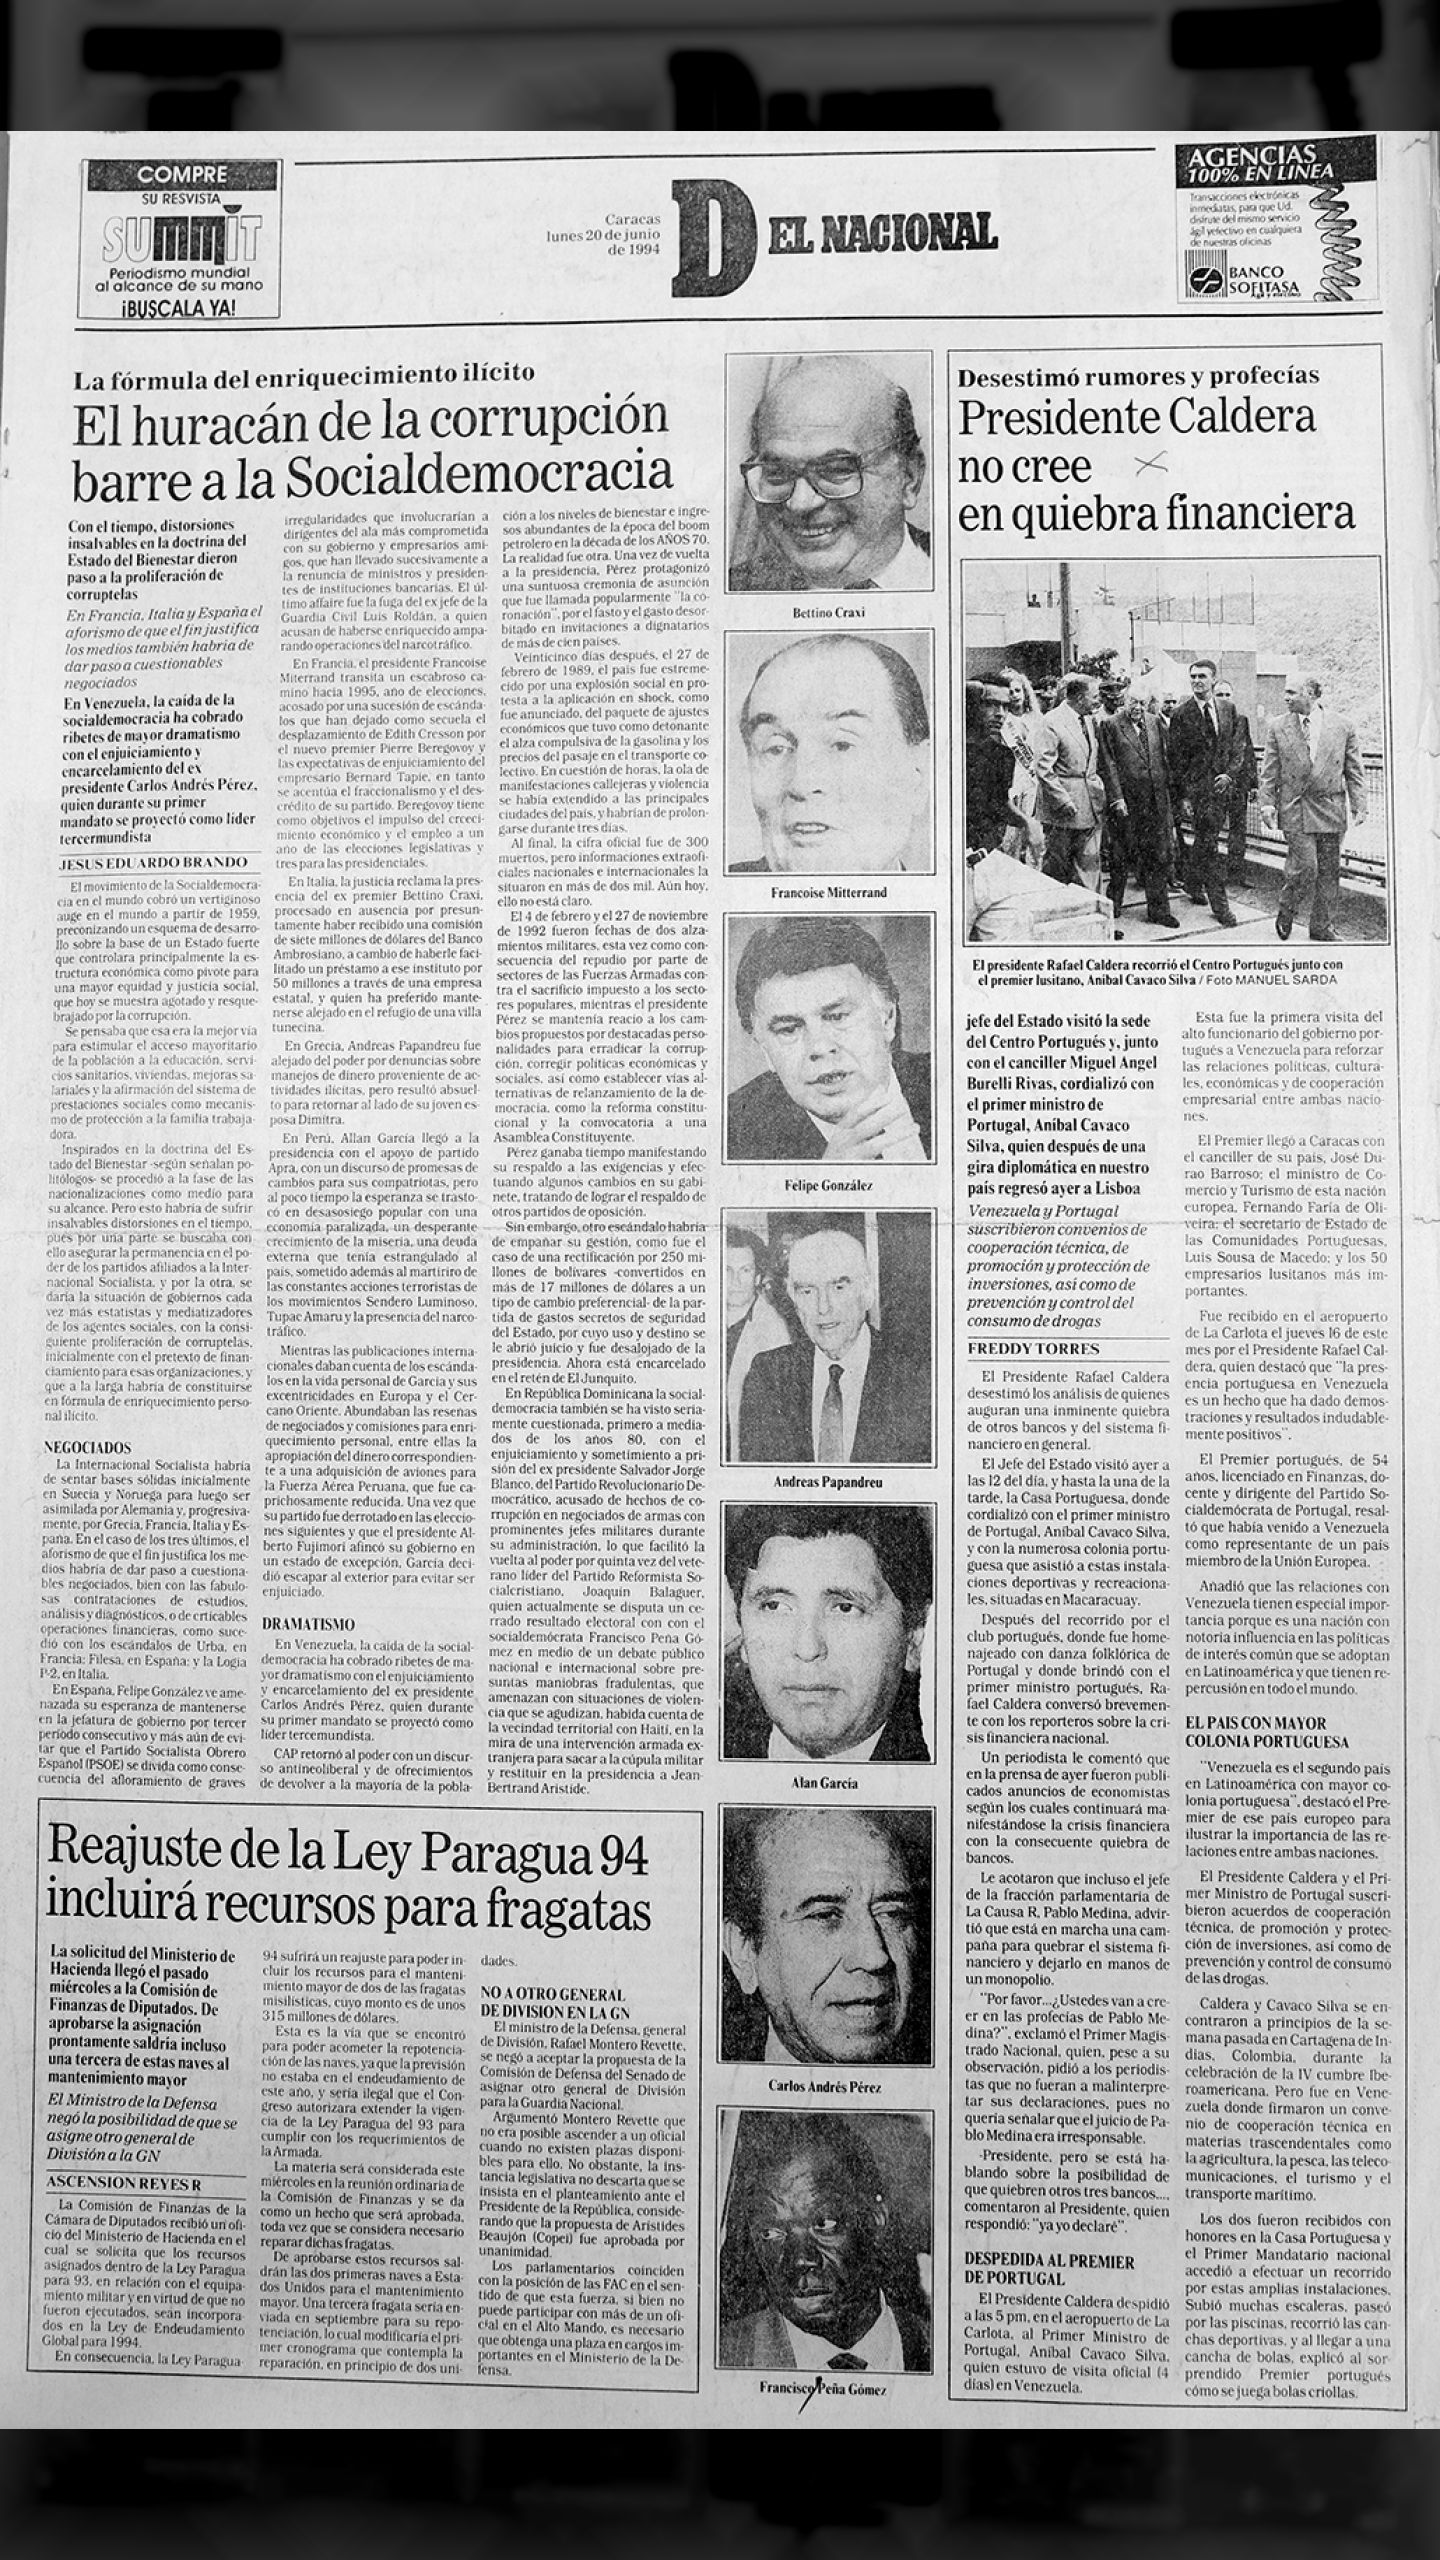 El huracán de la corrupción barre la Socialdemocracia (El Nacional, 20 de junio de 1994)